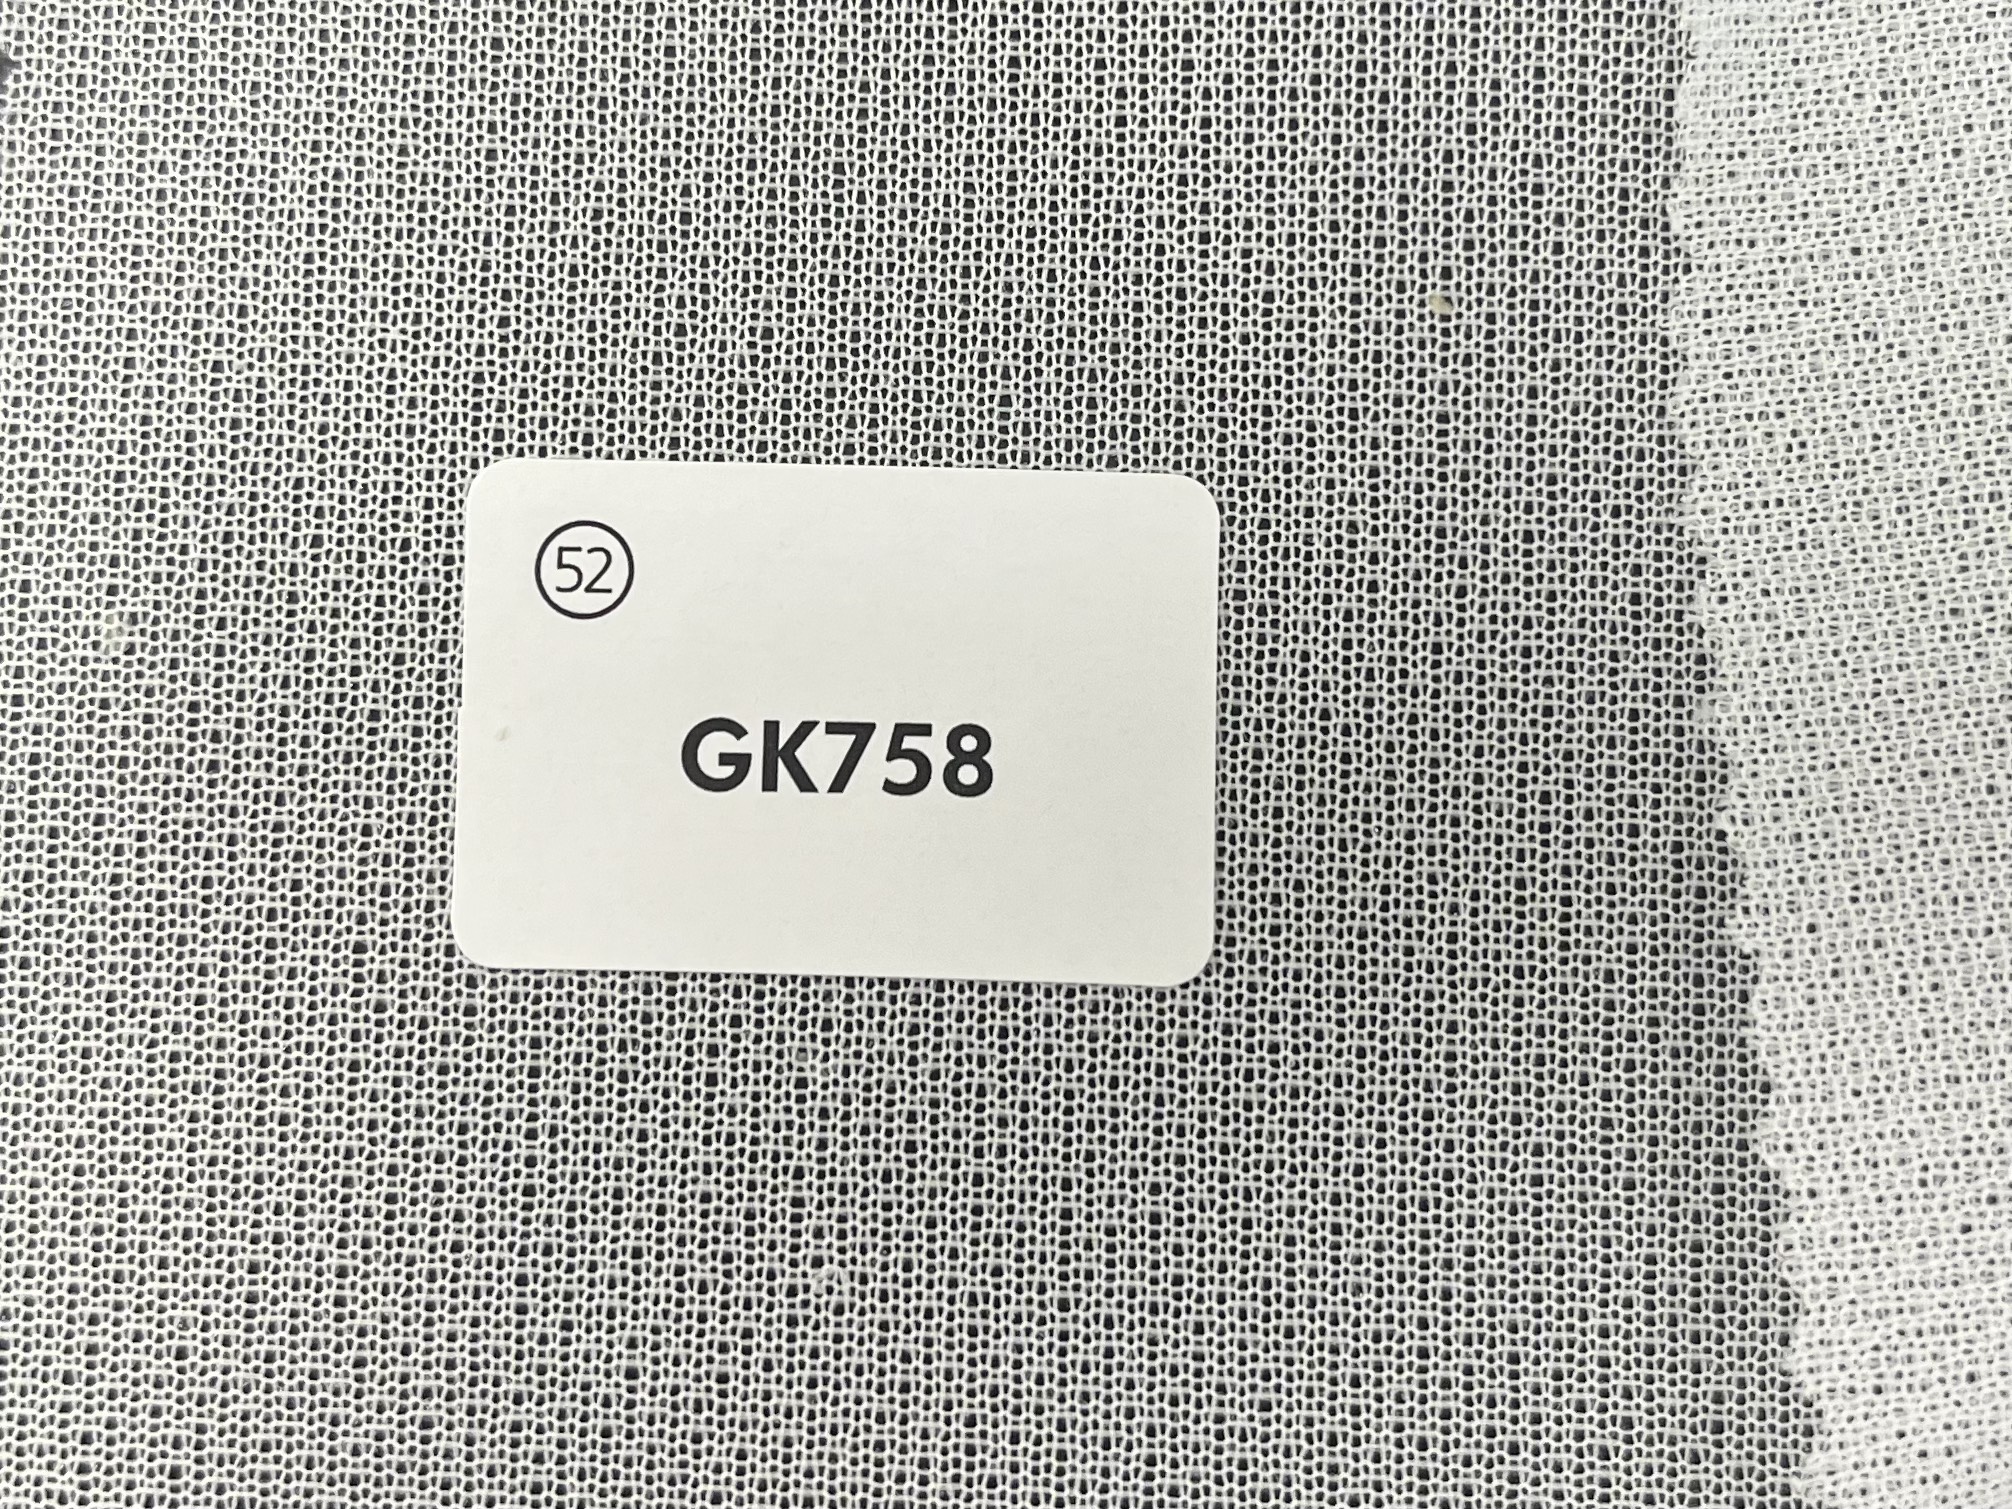 GK758